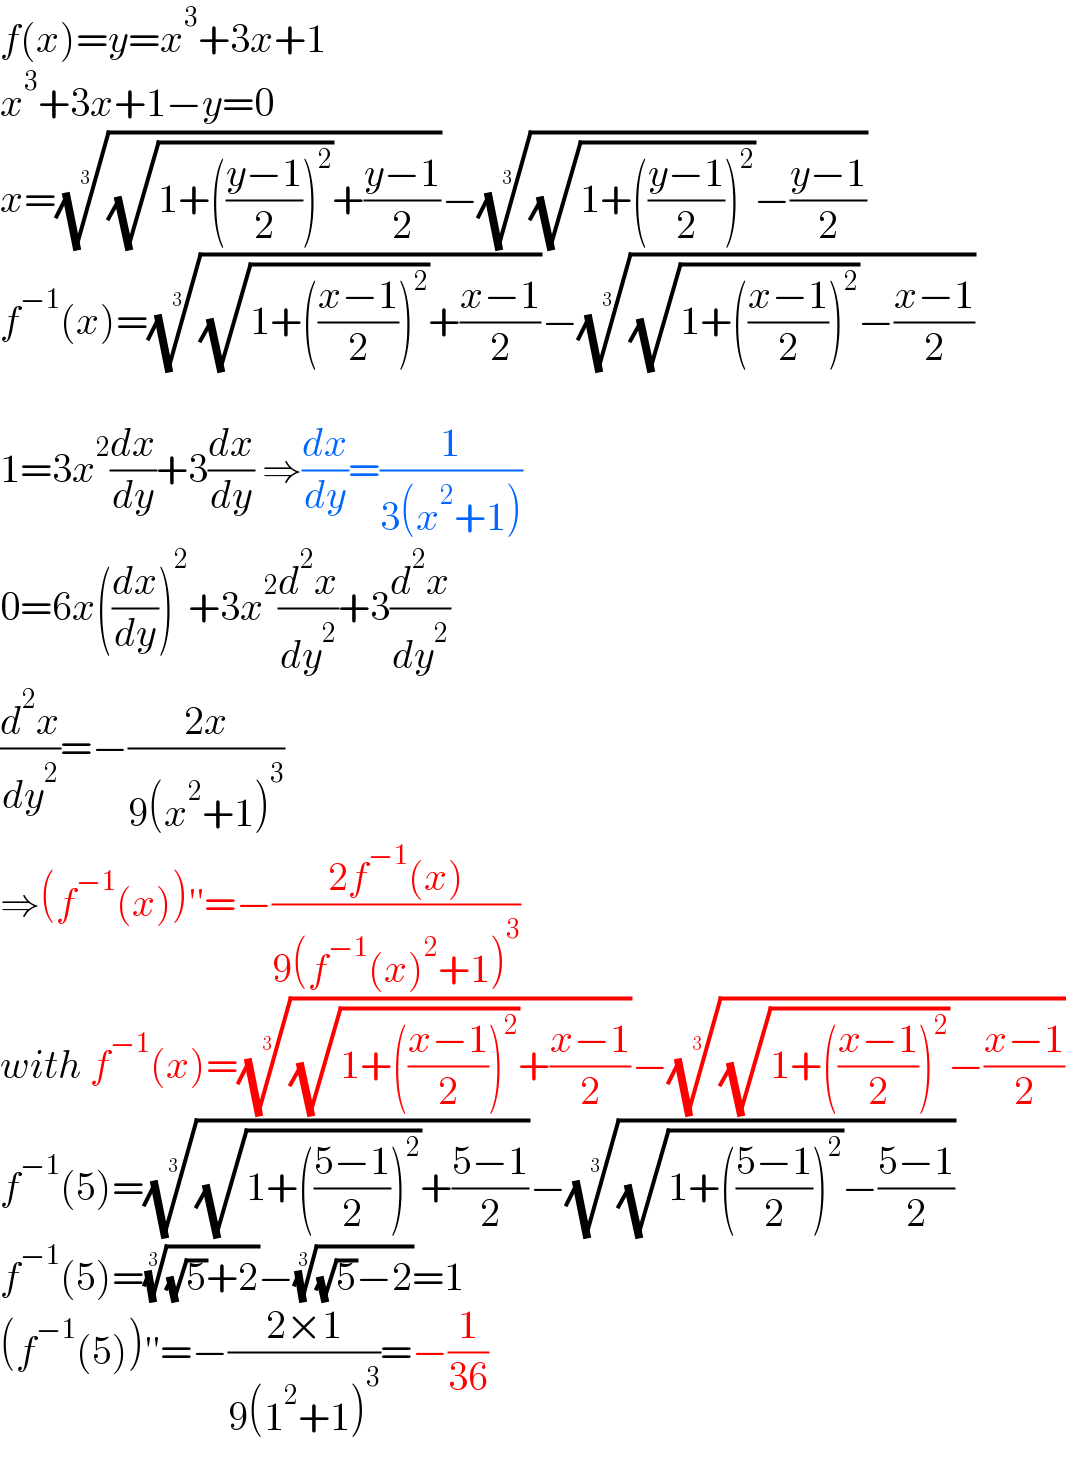 f(x)=y=x^3 +3x+1  x^3 +3x+1−y=0  x=(((√(1+(((y−1)/2))^2 ))+((y−1)/2)))^(1/3) −(((√(1+(((y−1)/2))^2 ))−((y−1)/2)))^(1/3)   f^(−1) (x)=(((√(1+(((x−1)/2))^2 ))+((x−1)/2)))^(1/3) −(((√(1+(((x−1)/2))^2 ))−((x−1)/2)))^(1/3)     1=3x^2 (dx/dy)+3(dx/dy) ⇒(dx/dy)=(1/(3(x^2 +1)))  0=6x((dx/dy))^2 +3x^2 (d^2 x/dy^2 )+3(d^2 x/dy^2 )  (d^2 x/dy^2 )=−((2x)/(9(x^2 +1)^3 ))  ⇒(f^(−1) (x))′′=−((2f^(−1) (x))/(9(f^(−1) (x)^2 +1)^3 ))  with f^(−1) (x)=(((√(1+(((x−1)/2))^2 ))+((x−1)/2)))^(1/3) −(((√(1+(((x−1)/2))^2 ))−((x−1)/2)))^(1/3)   f^(−1) (5)=(((√(1+(((5−1)/2))^2 ))+((5−1)/2)))^(1/3) −(((√(1+(((5−1)/2))^2 ))−((5−1)/2)))^(1/3)   f^(−1) (5)=(((√5)+2))^(1/3) −(((√5)−2))^(1/3) =1  (f^(−1) (5))′′=−((2×1)/(9(1^2 +1)^3 ))=−(1/(36))  